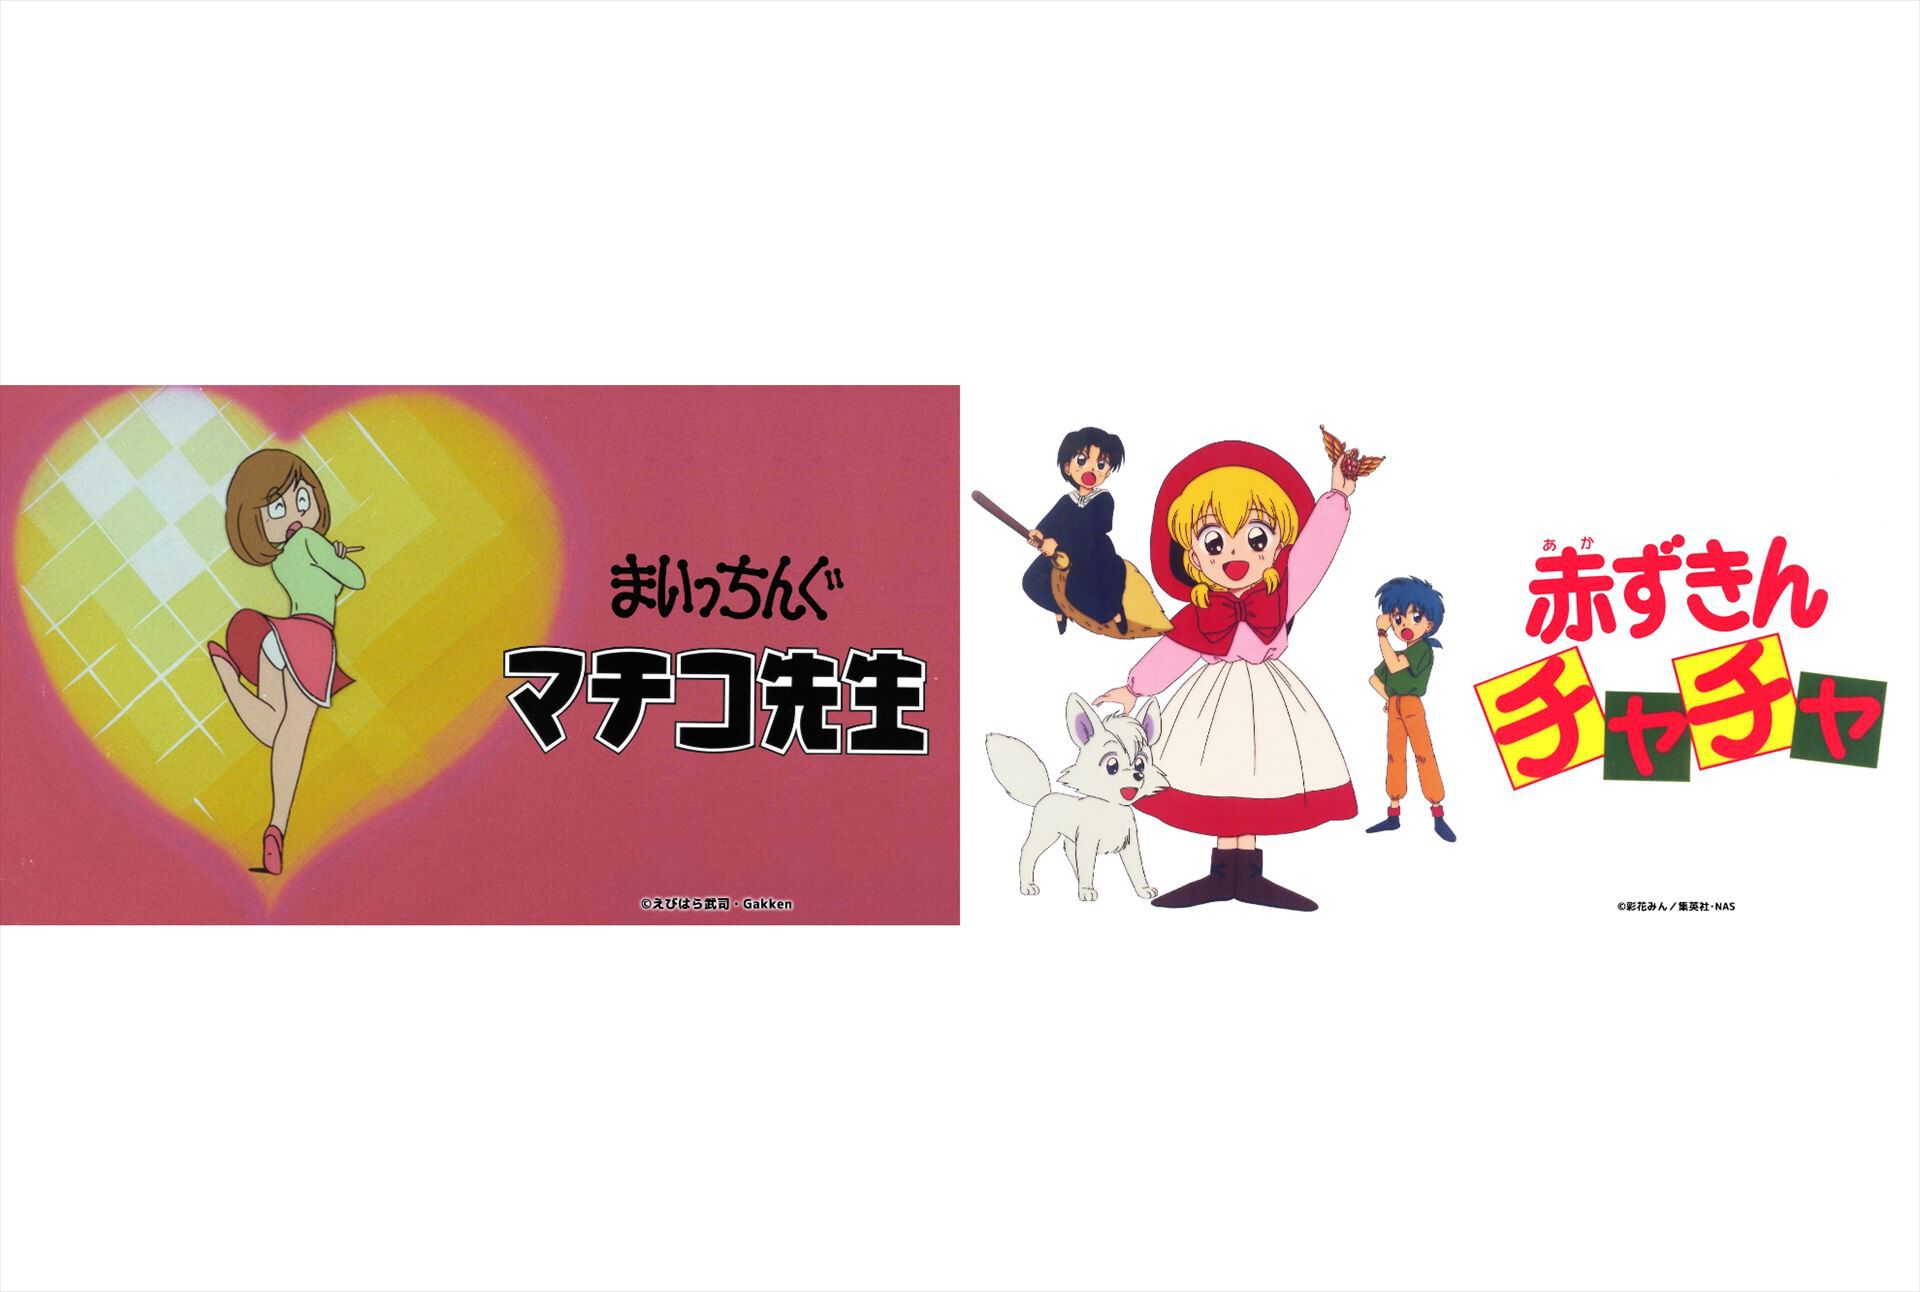 アニメ『まいっちんぐマチコ先生』『赤ずきんチャチャ』がTVer・ネットもテレ東で無料配信。80年代、90年代に放送された伝説のアニメがまさかの配信